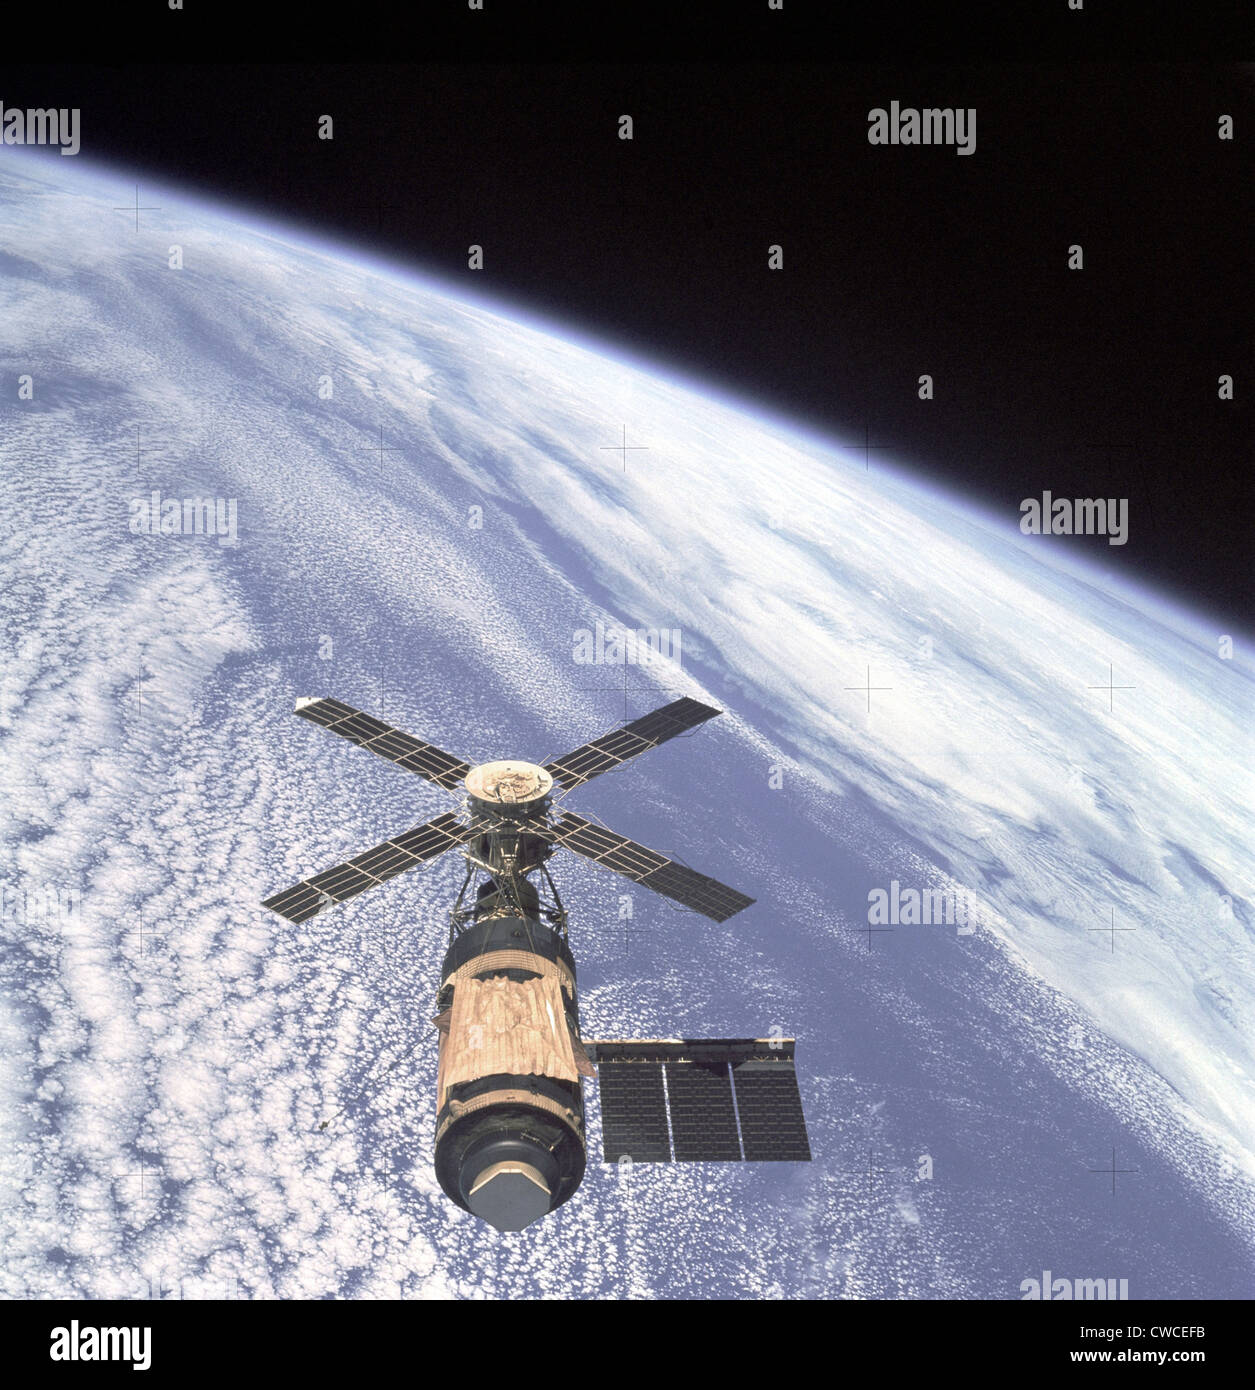 El Skylab Taller Orbital En La Orbita De La Tierra El Oro Es Una